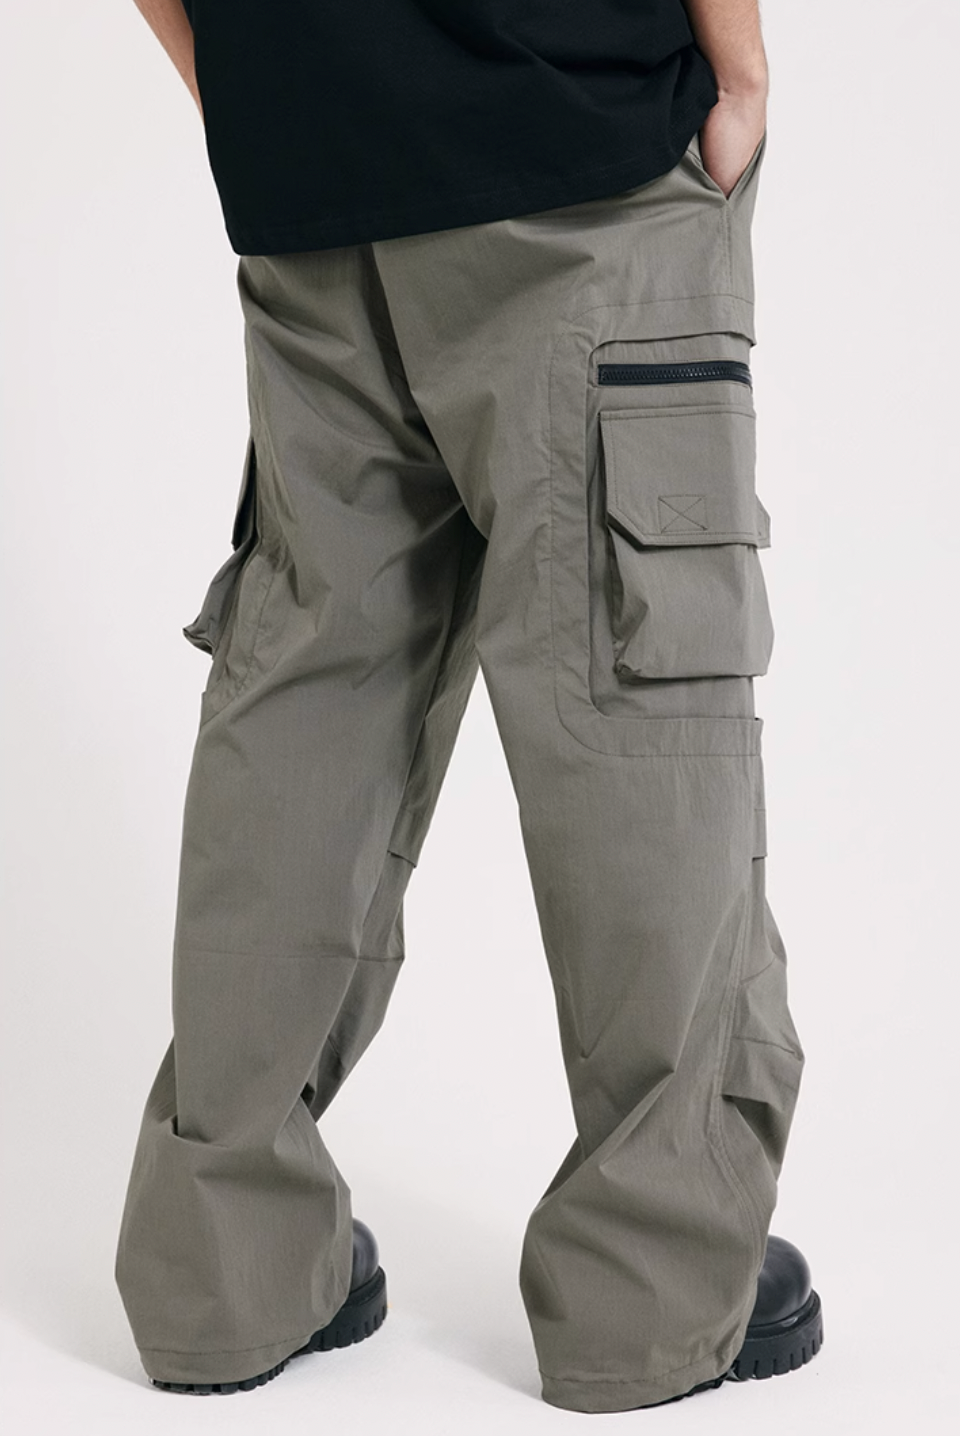 ANTIDOTE Multi Pocket Zippered Pants